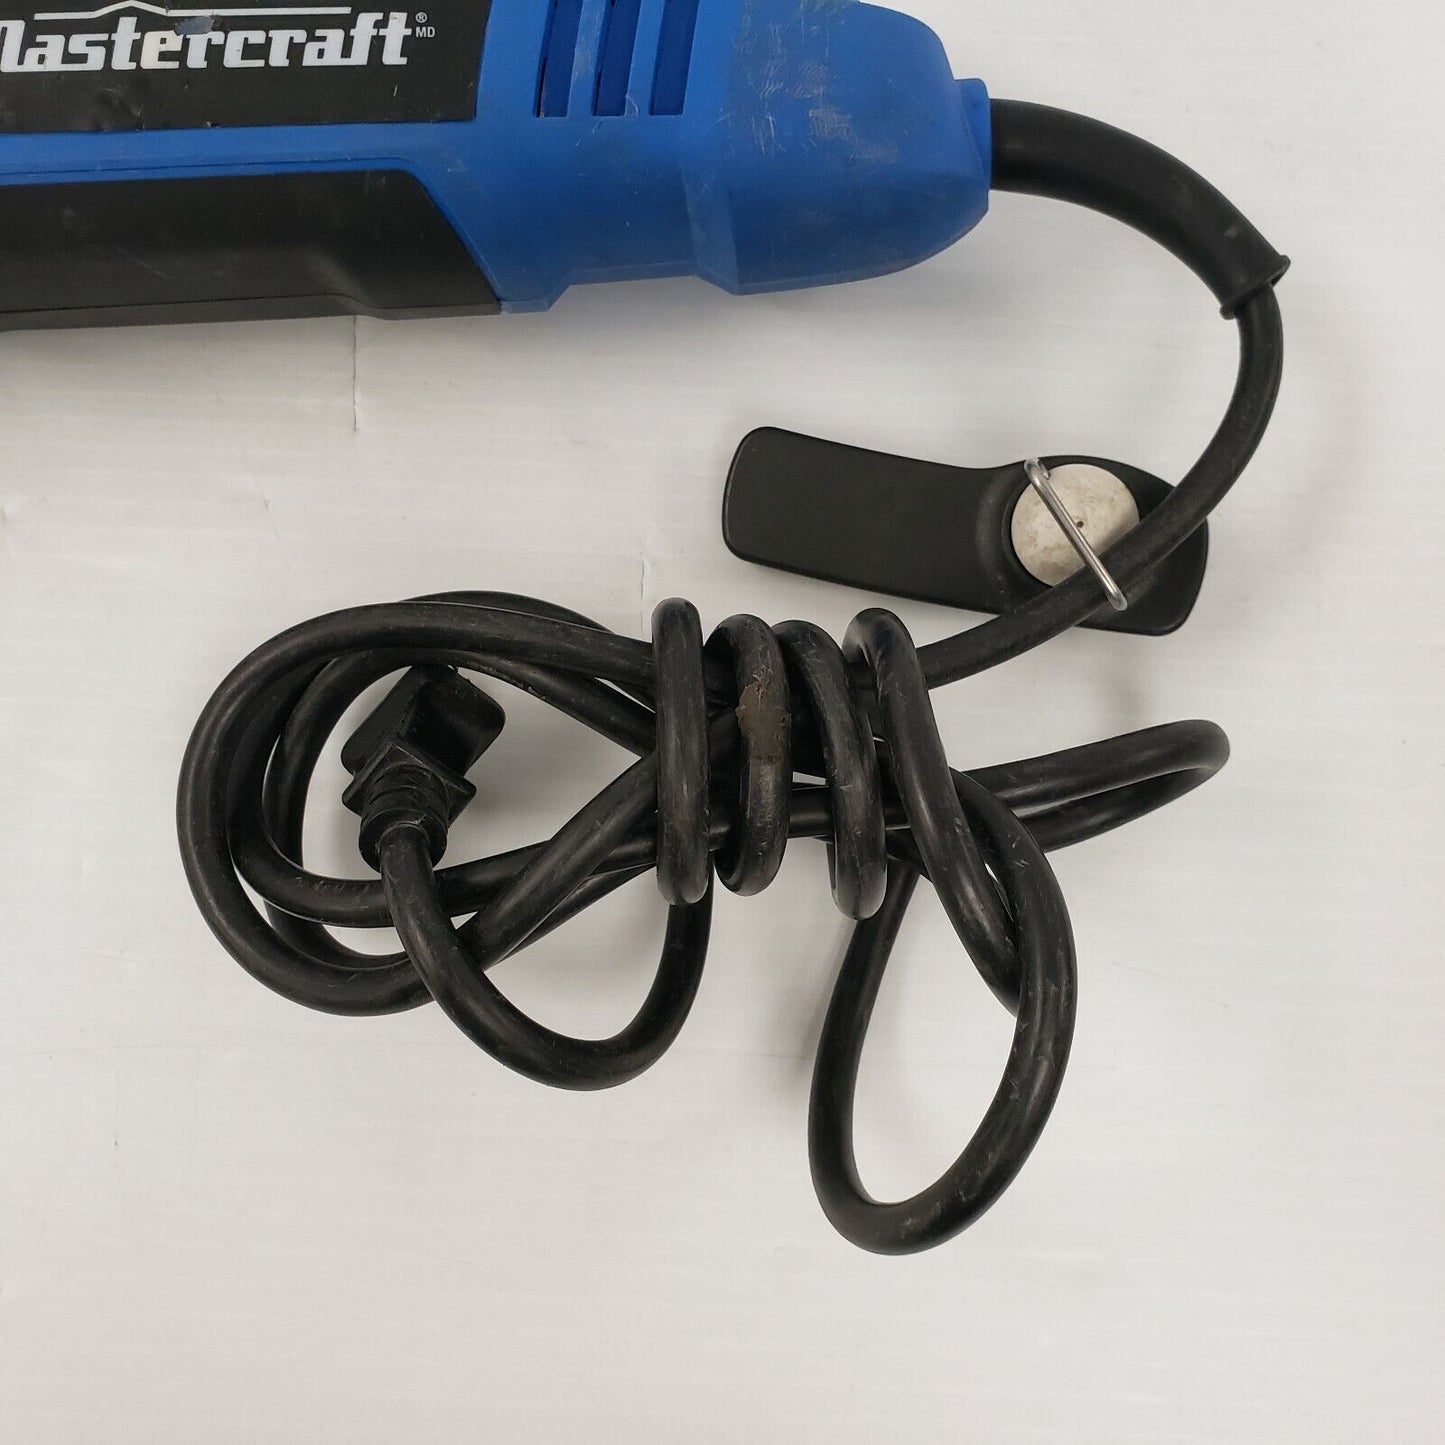 (8805-7) Mastercraft 054-8251-6 Multi Tool